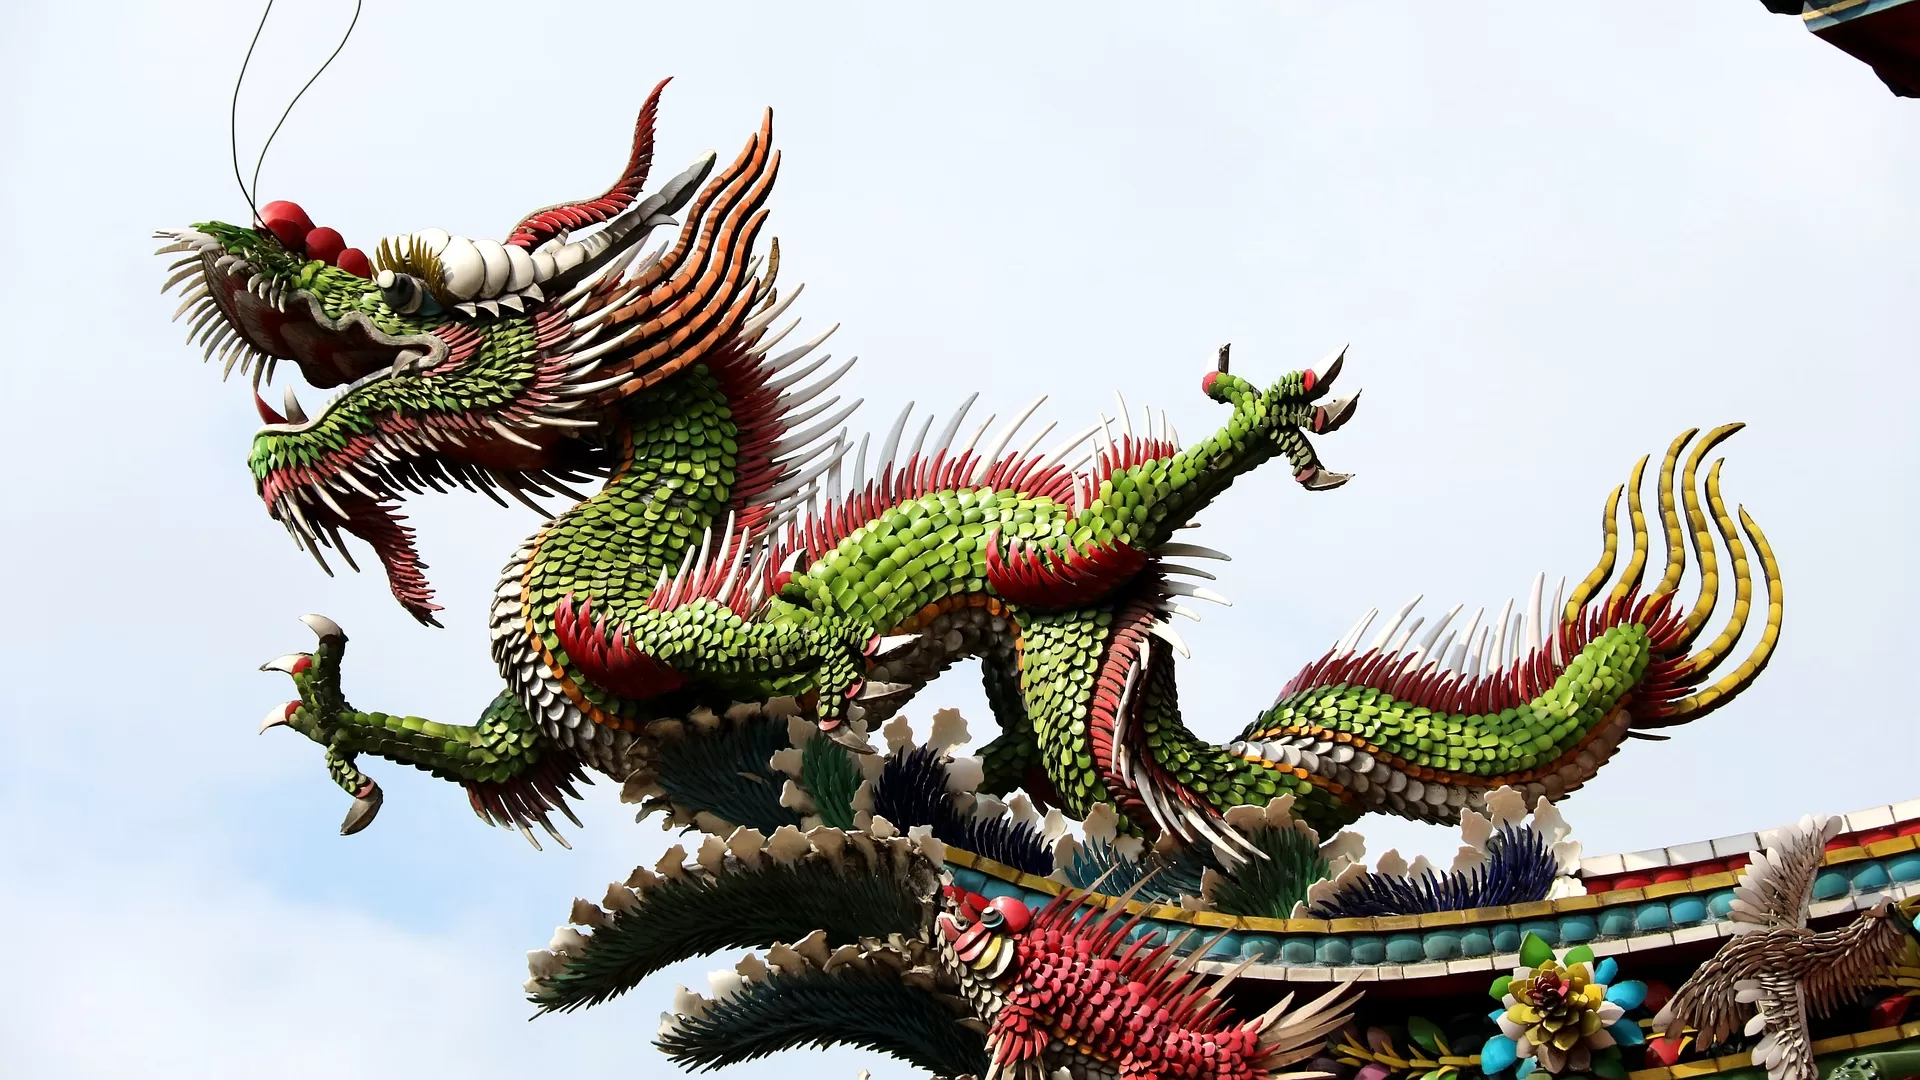 China: The Tenacious Dragon